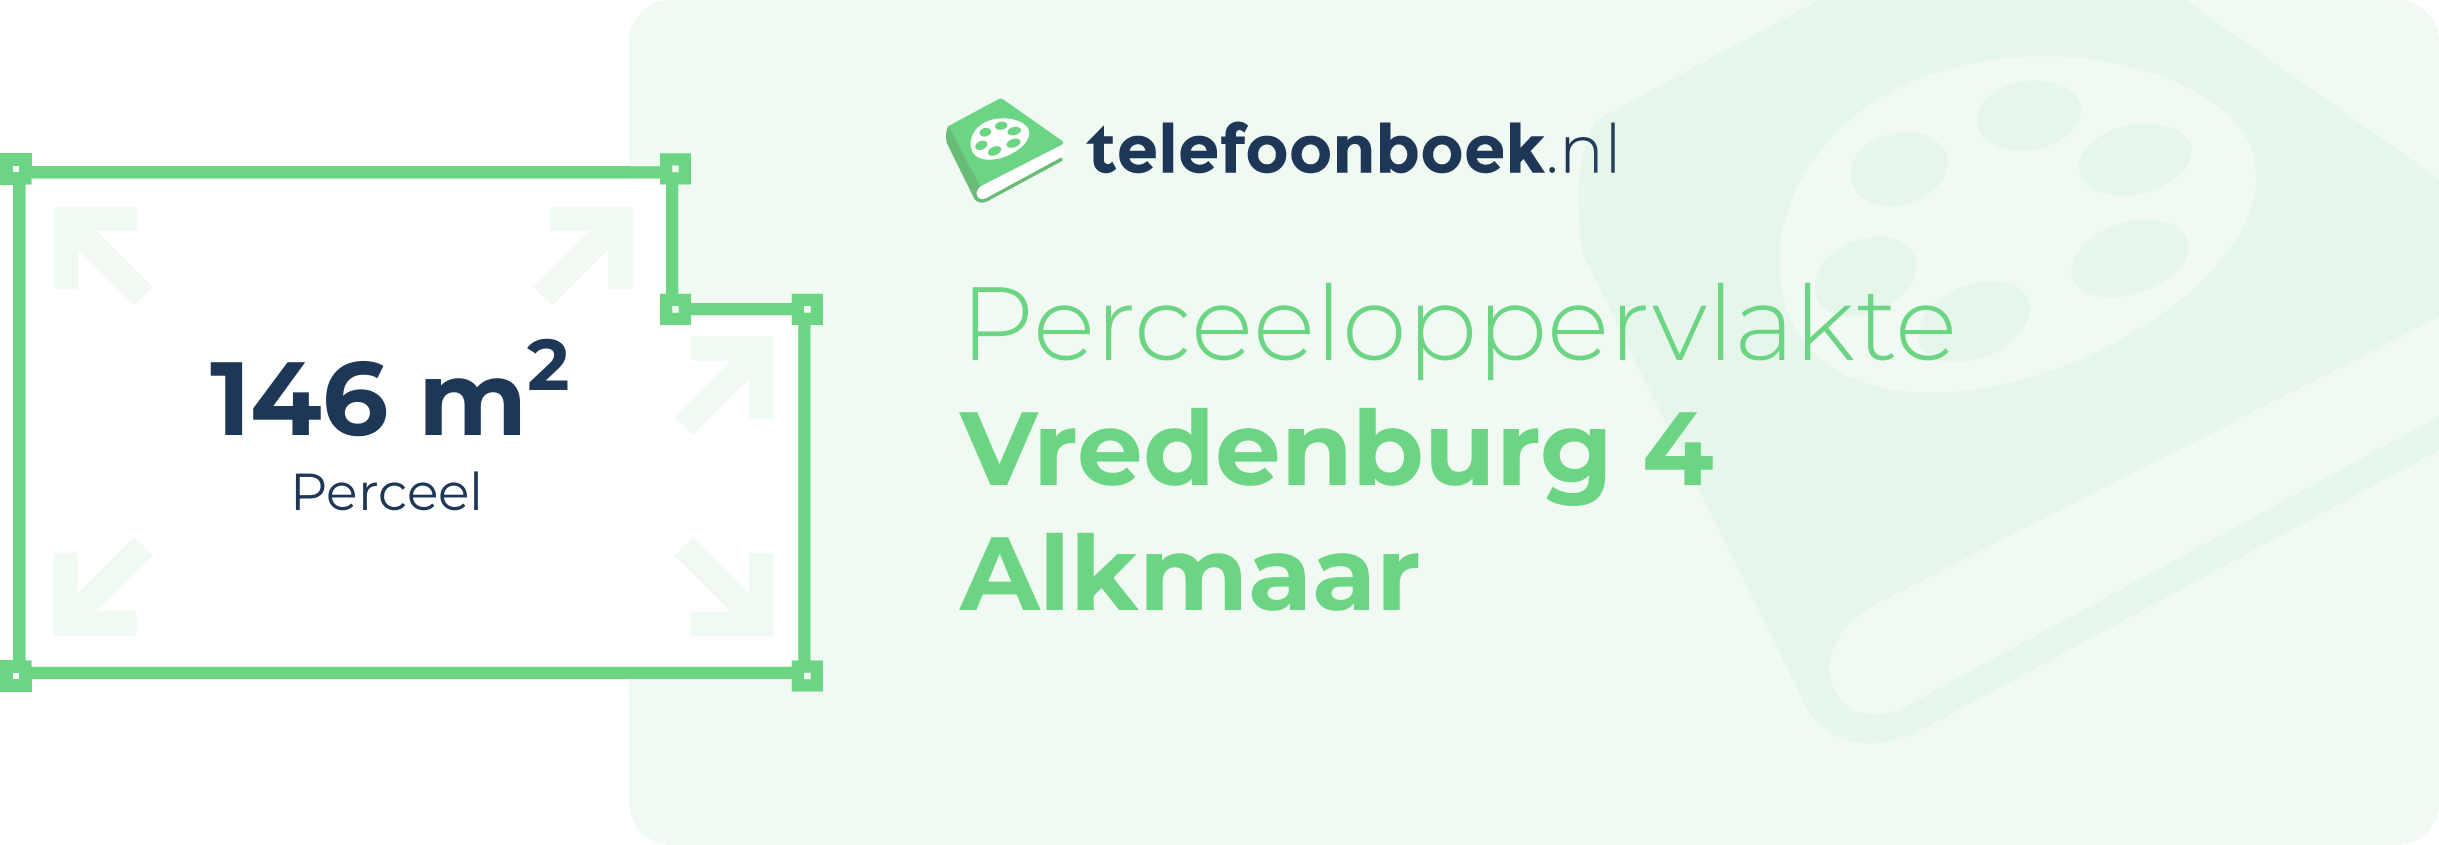 Perceeloppervlakte Vredenburg 4 Alkmaar